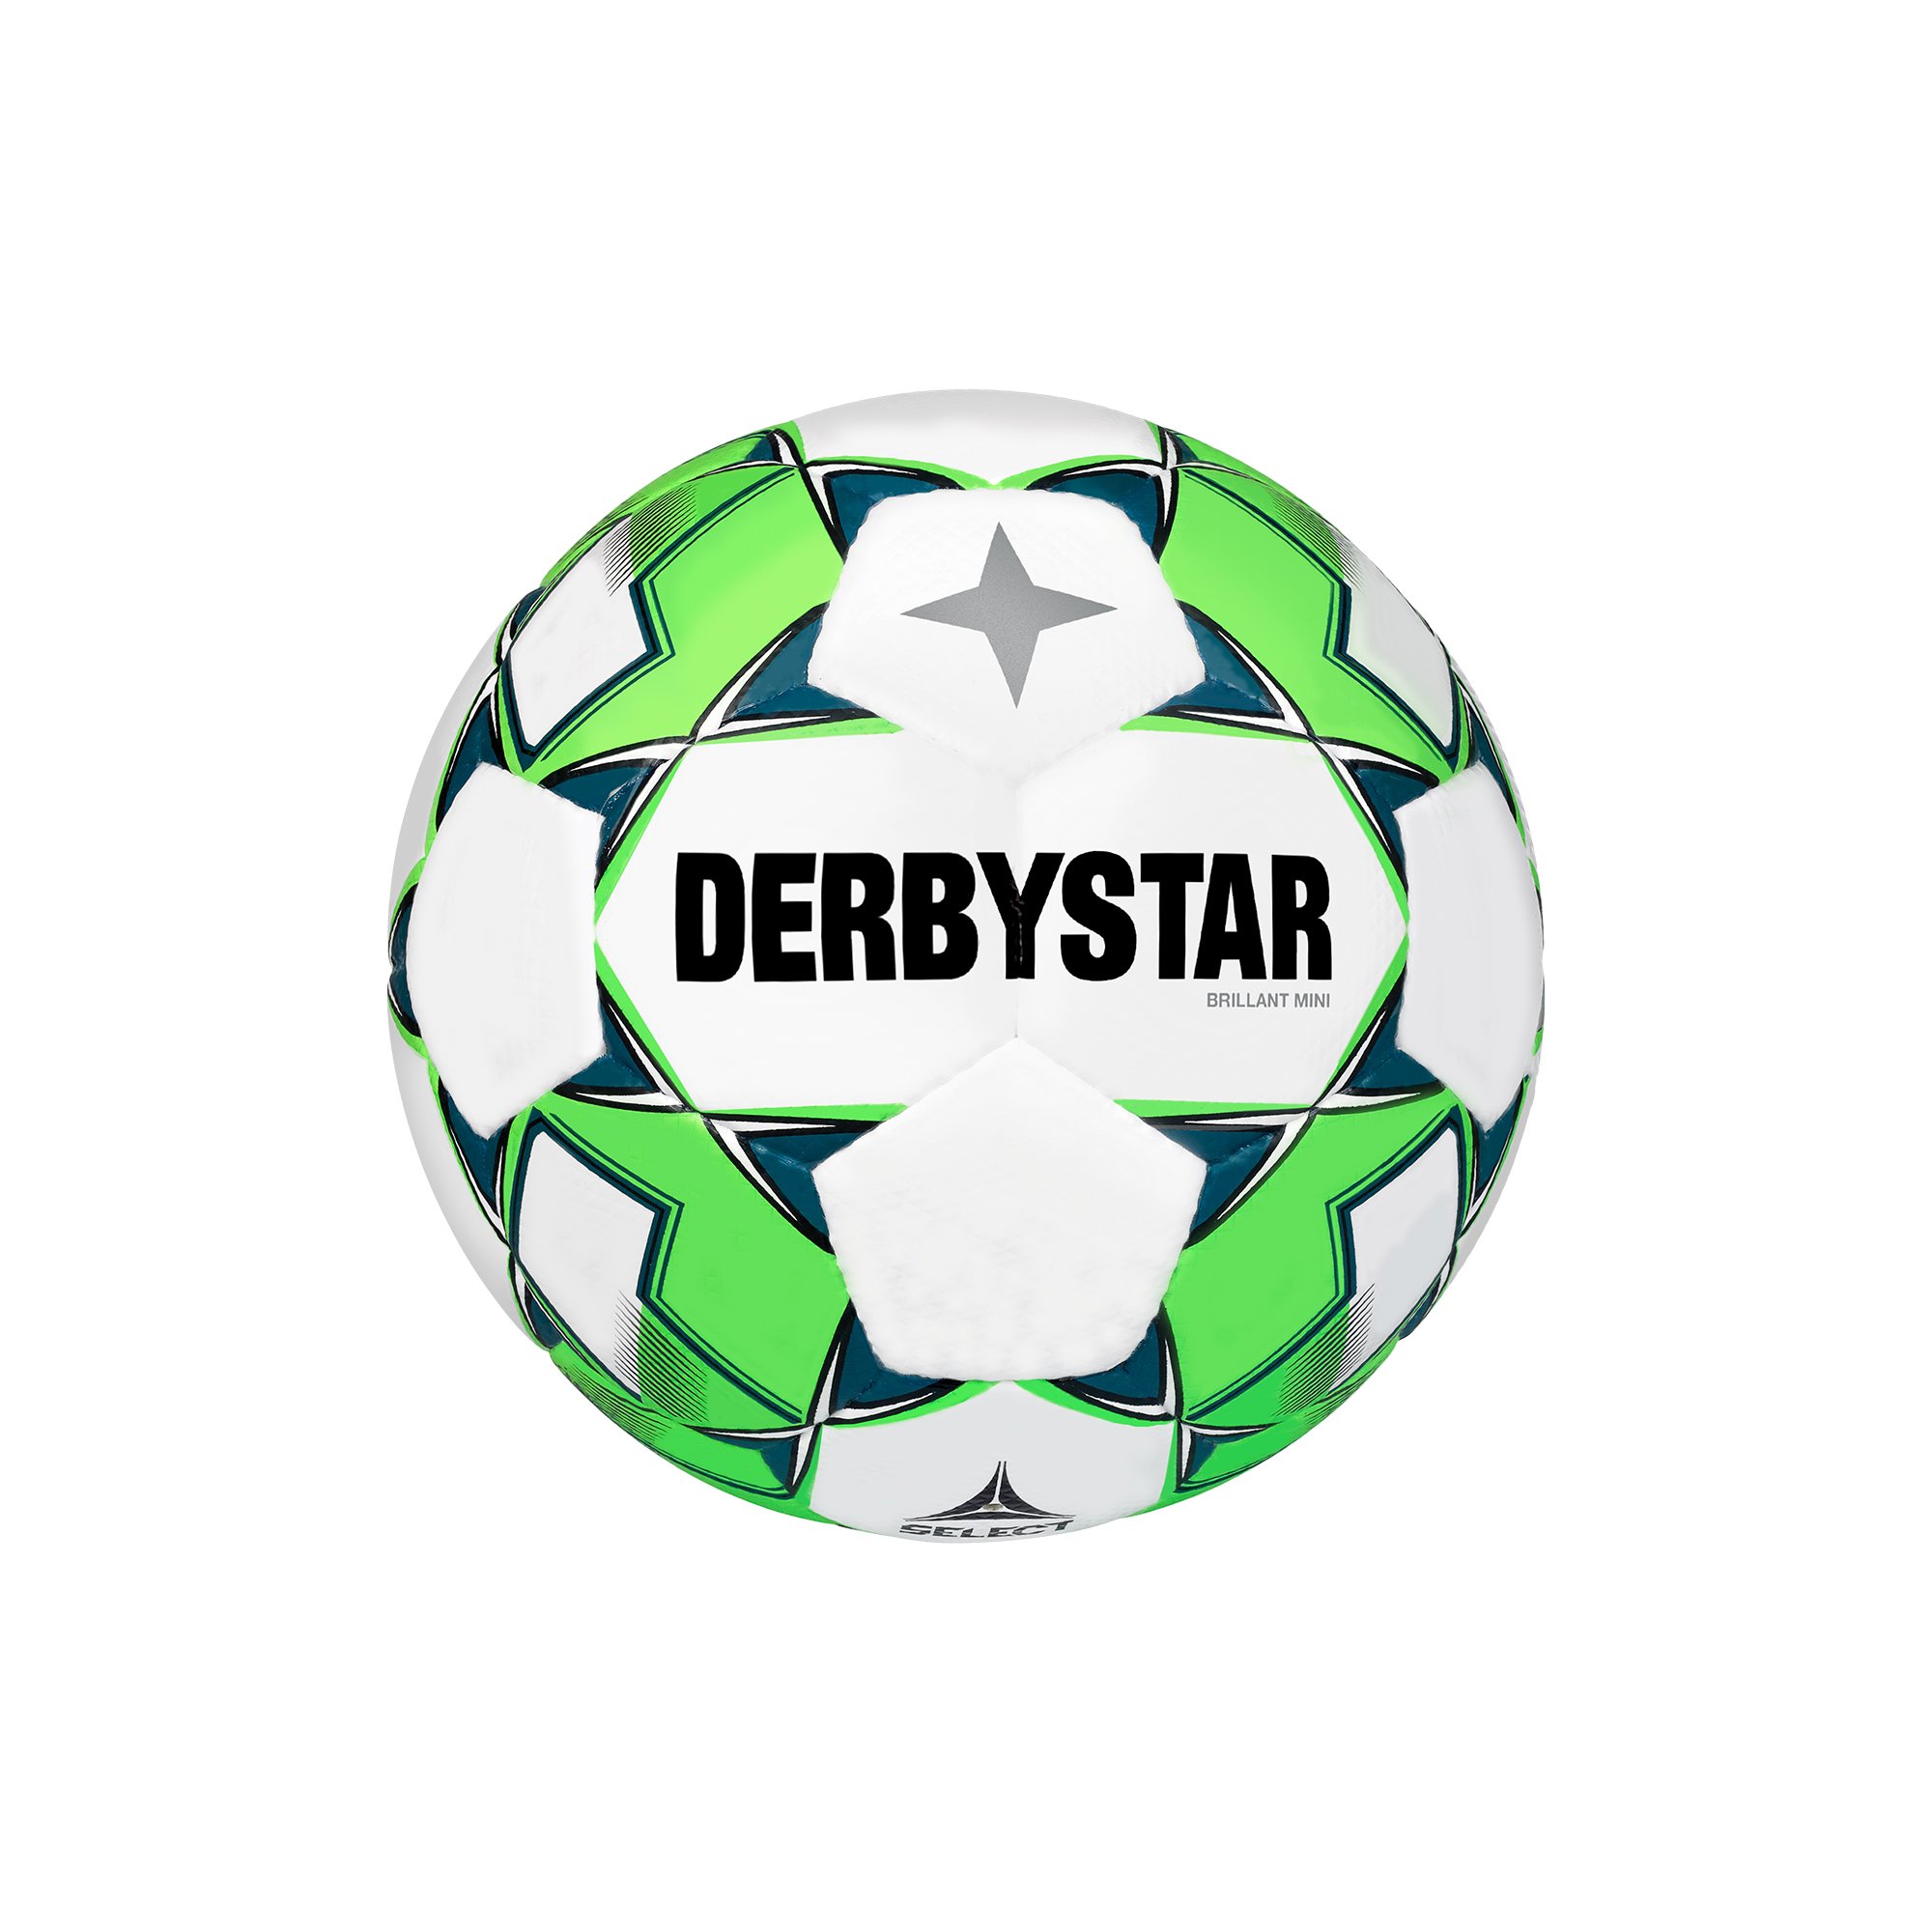 Derbystar Miniball v23